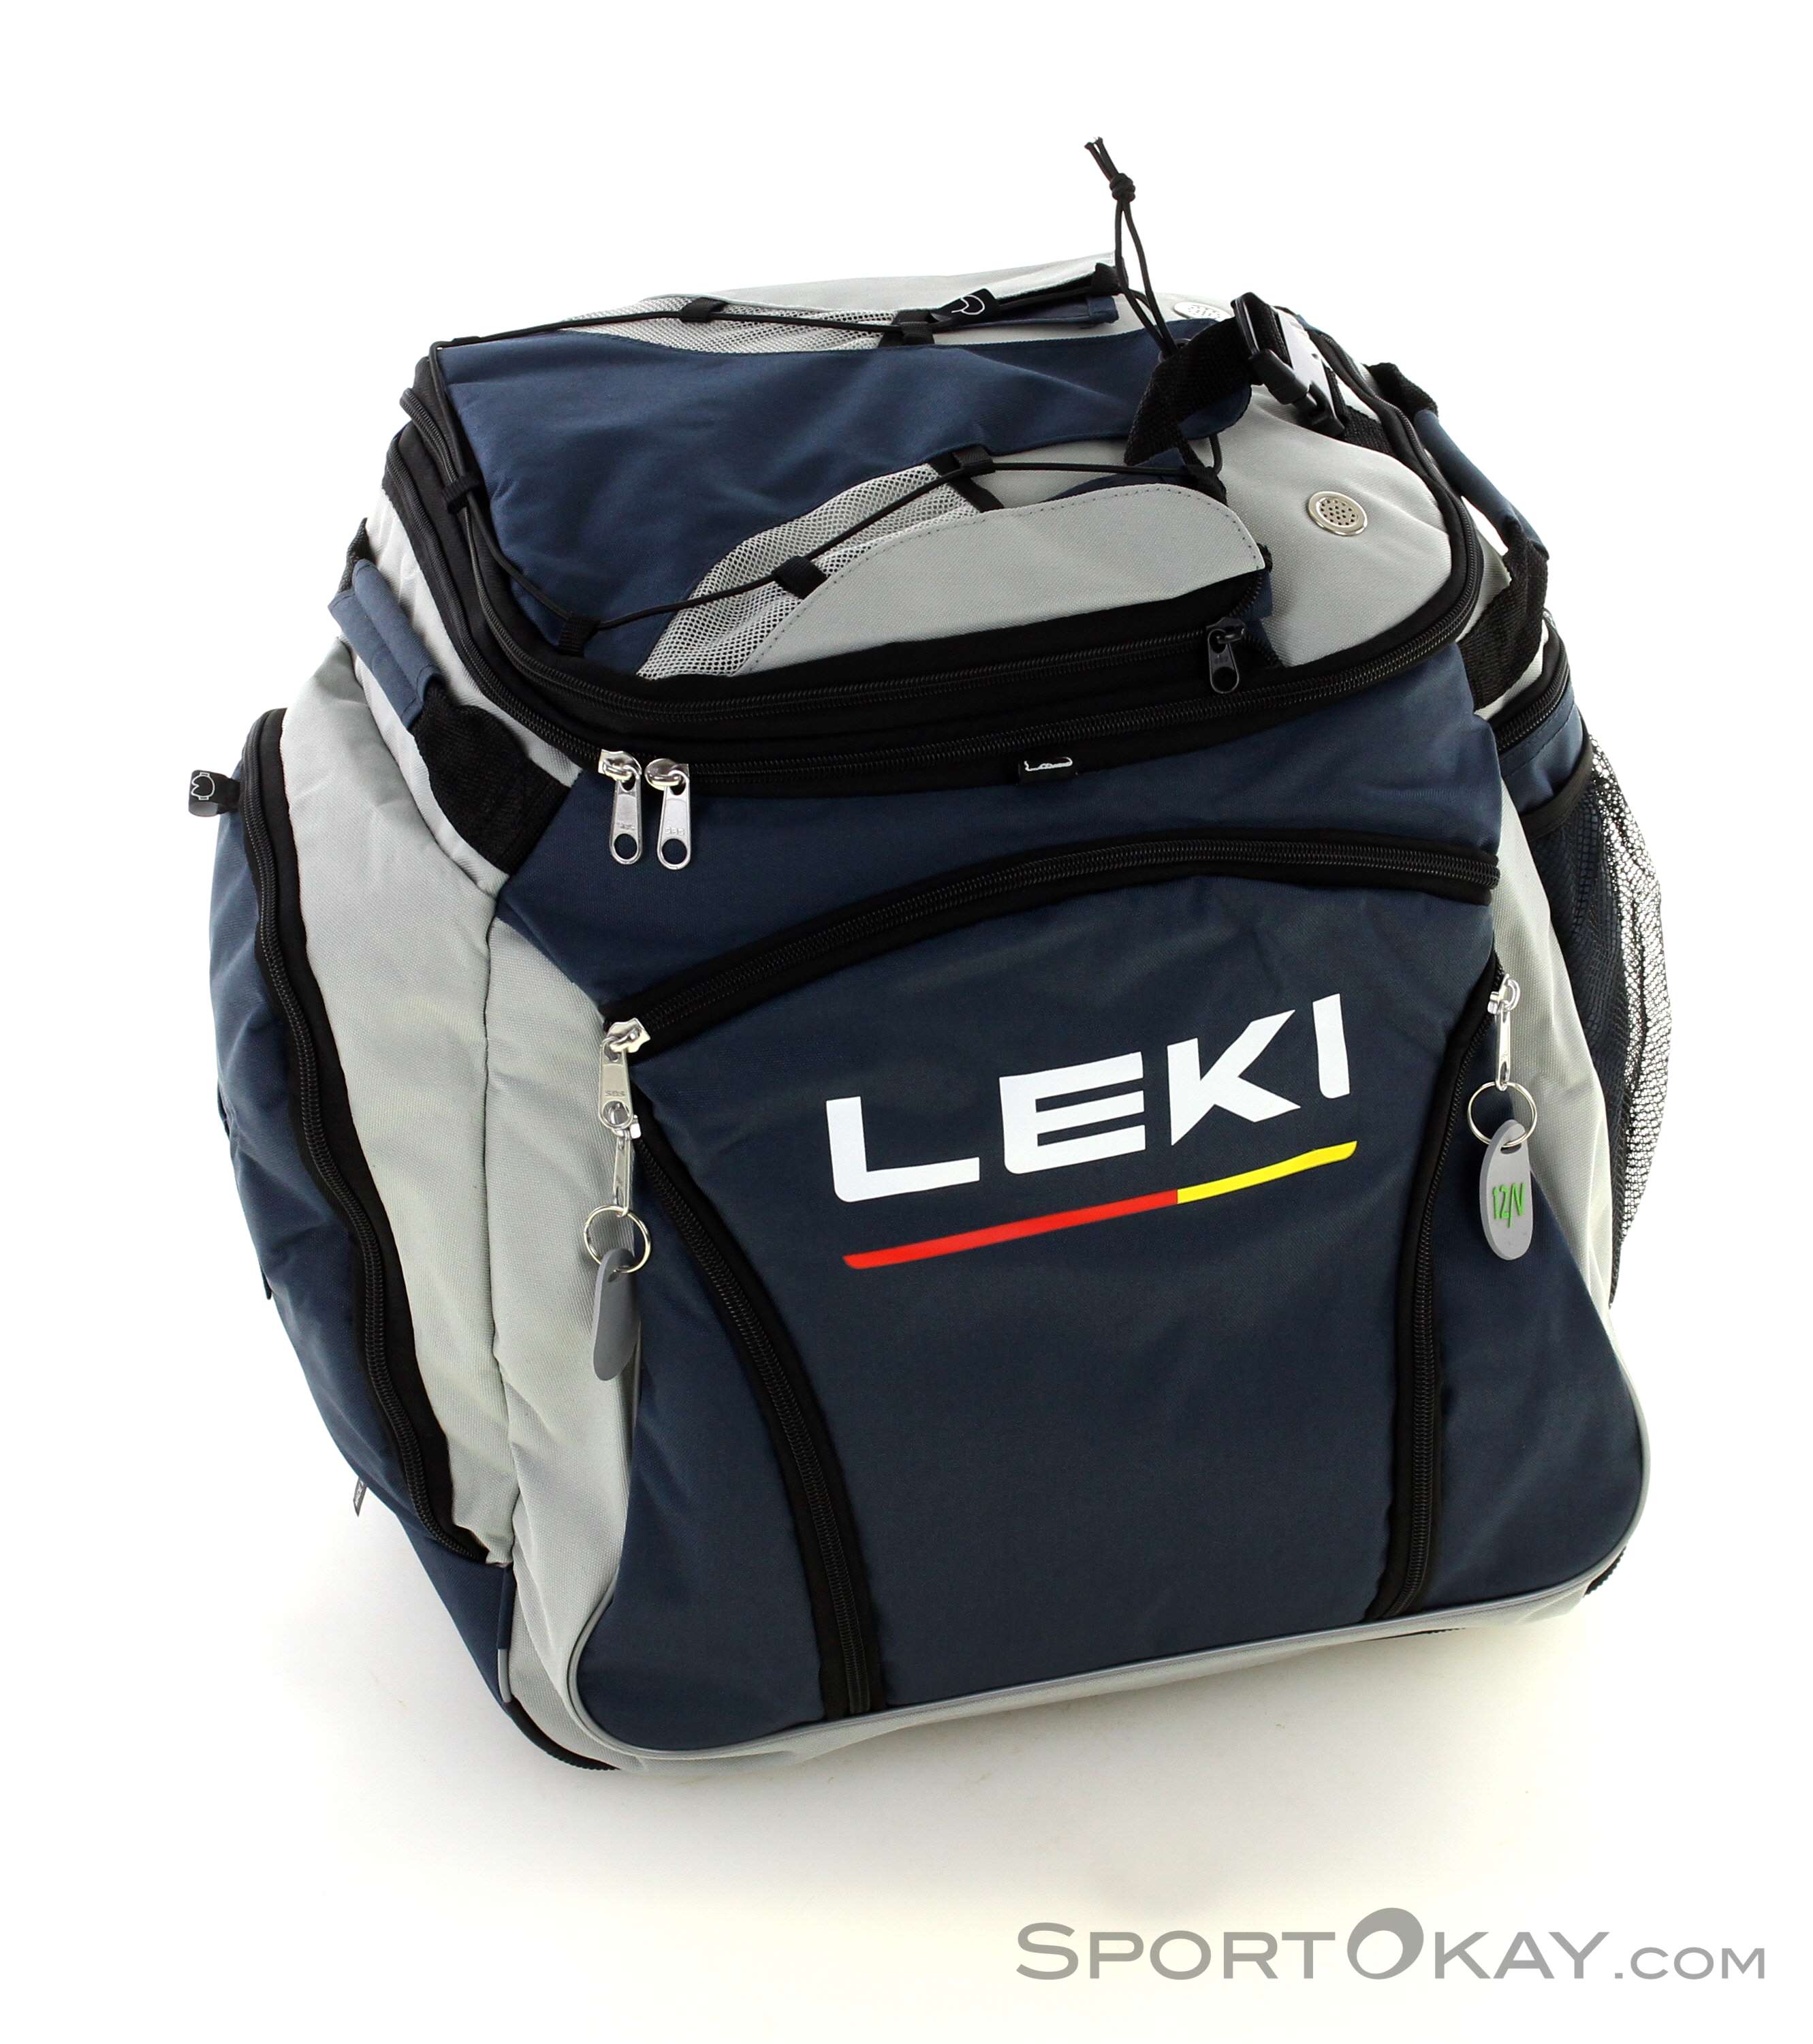 Leki Bootbag Hot (Heatable) 40l Borsa per Scarponi - Sacche da sci & borse  - Zaini - Sci alpinismo - Tutti